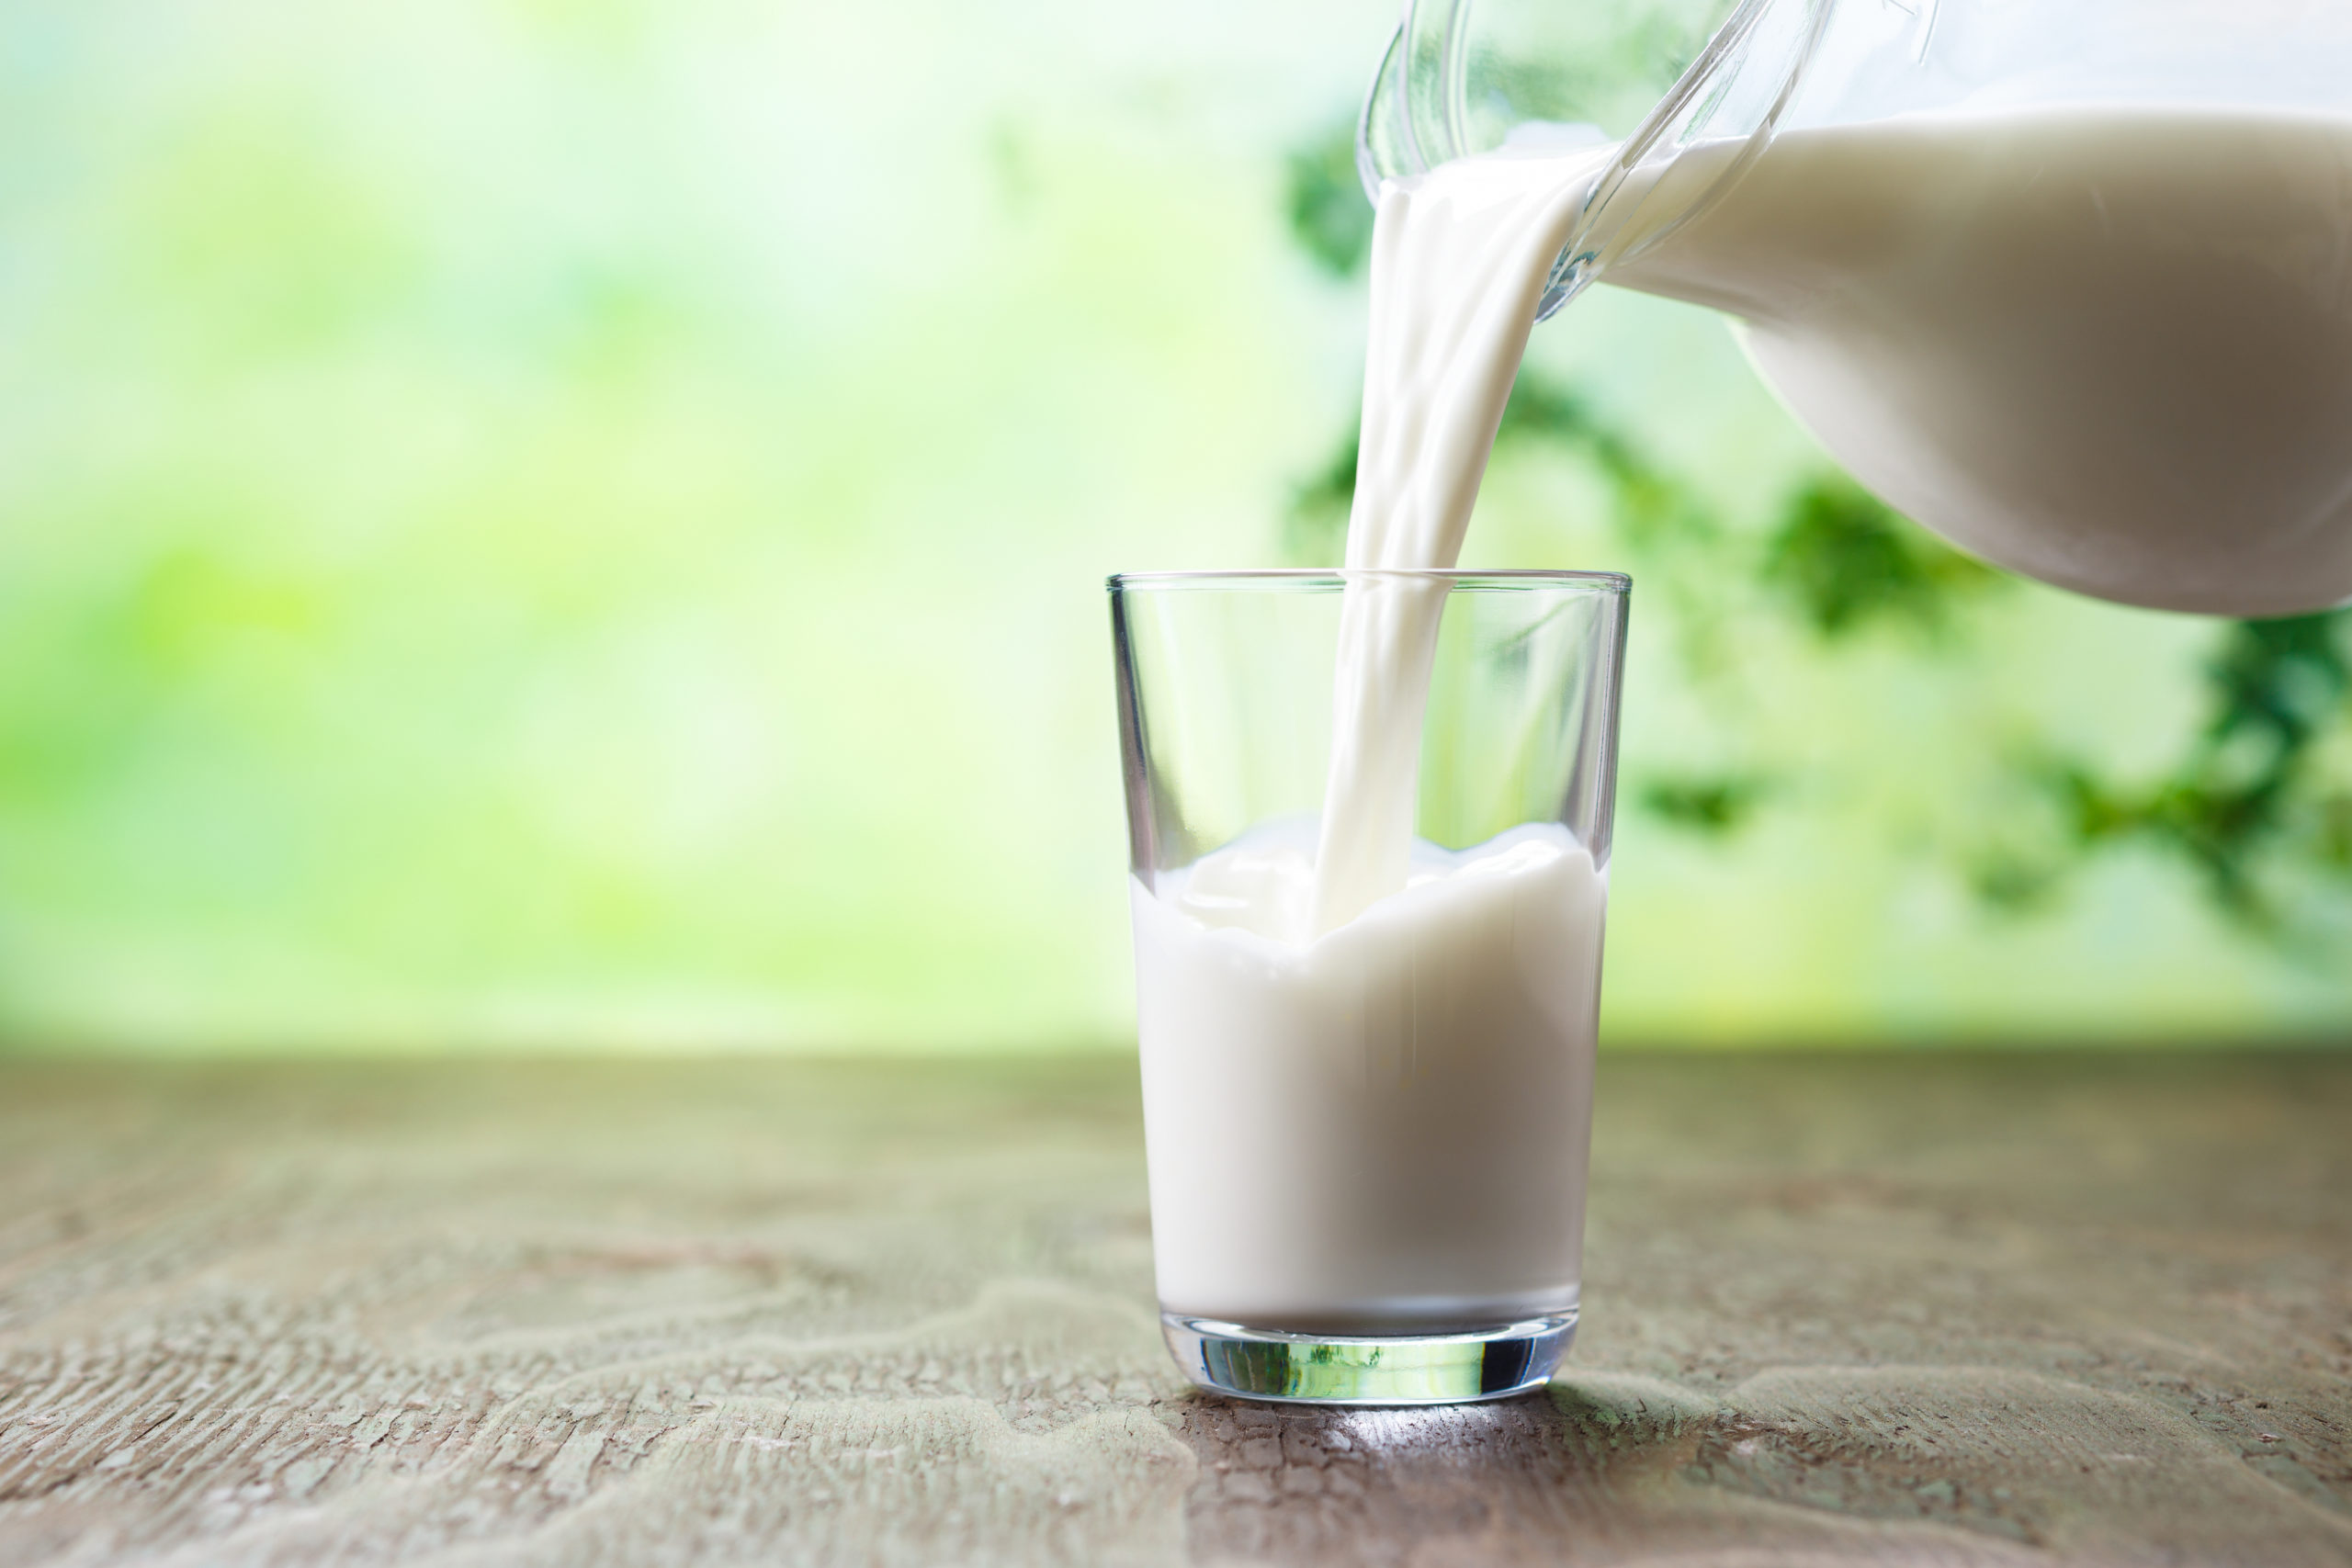 健康寿命を延ばす食材牛乳